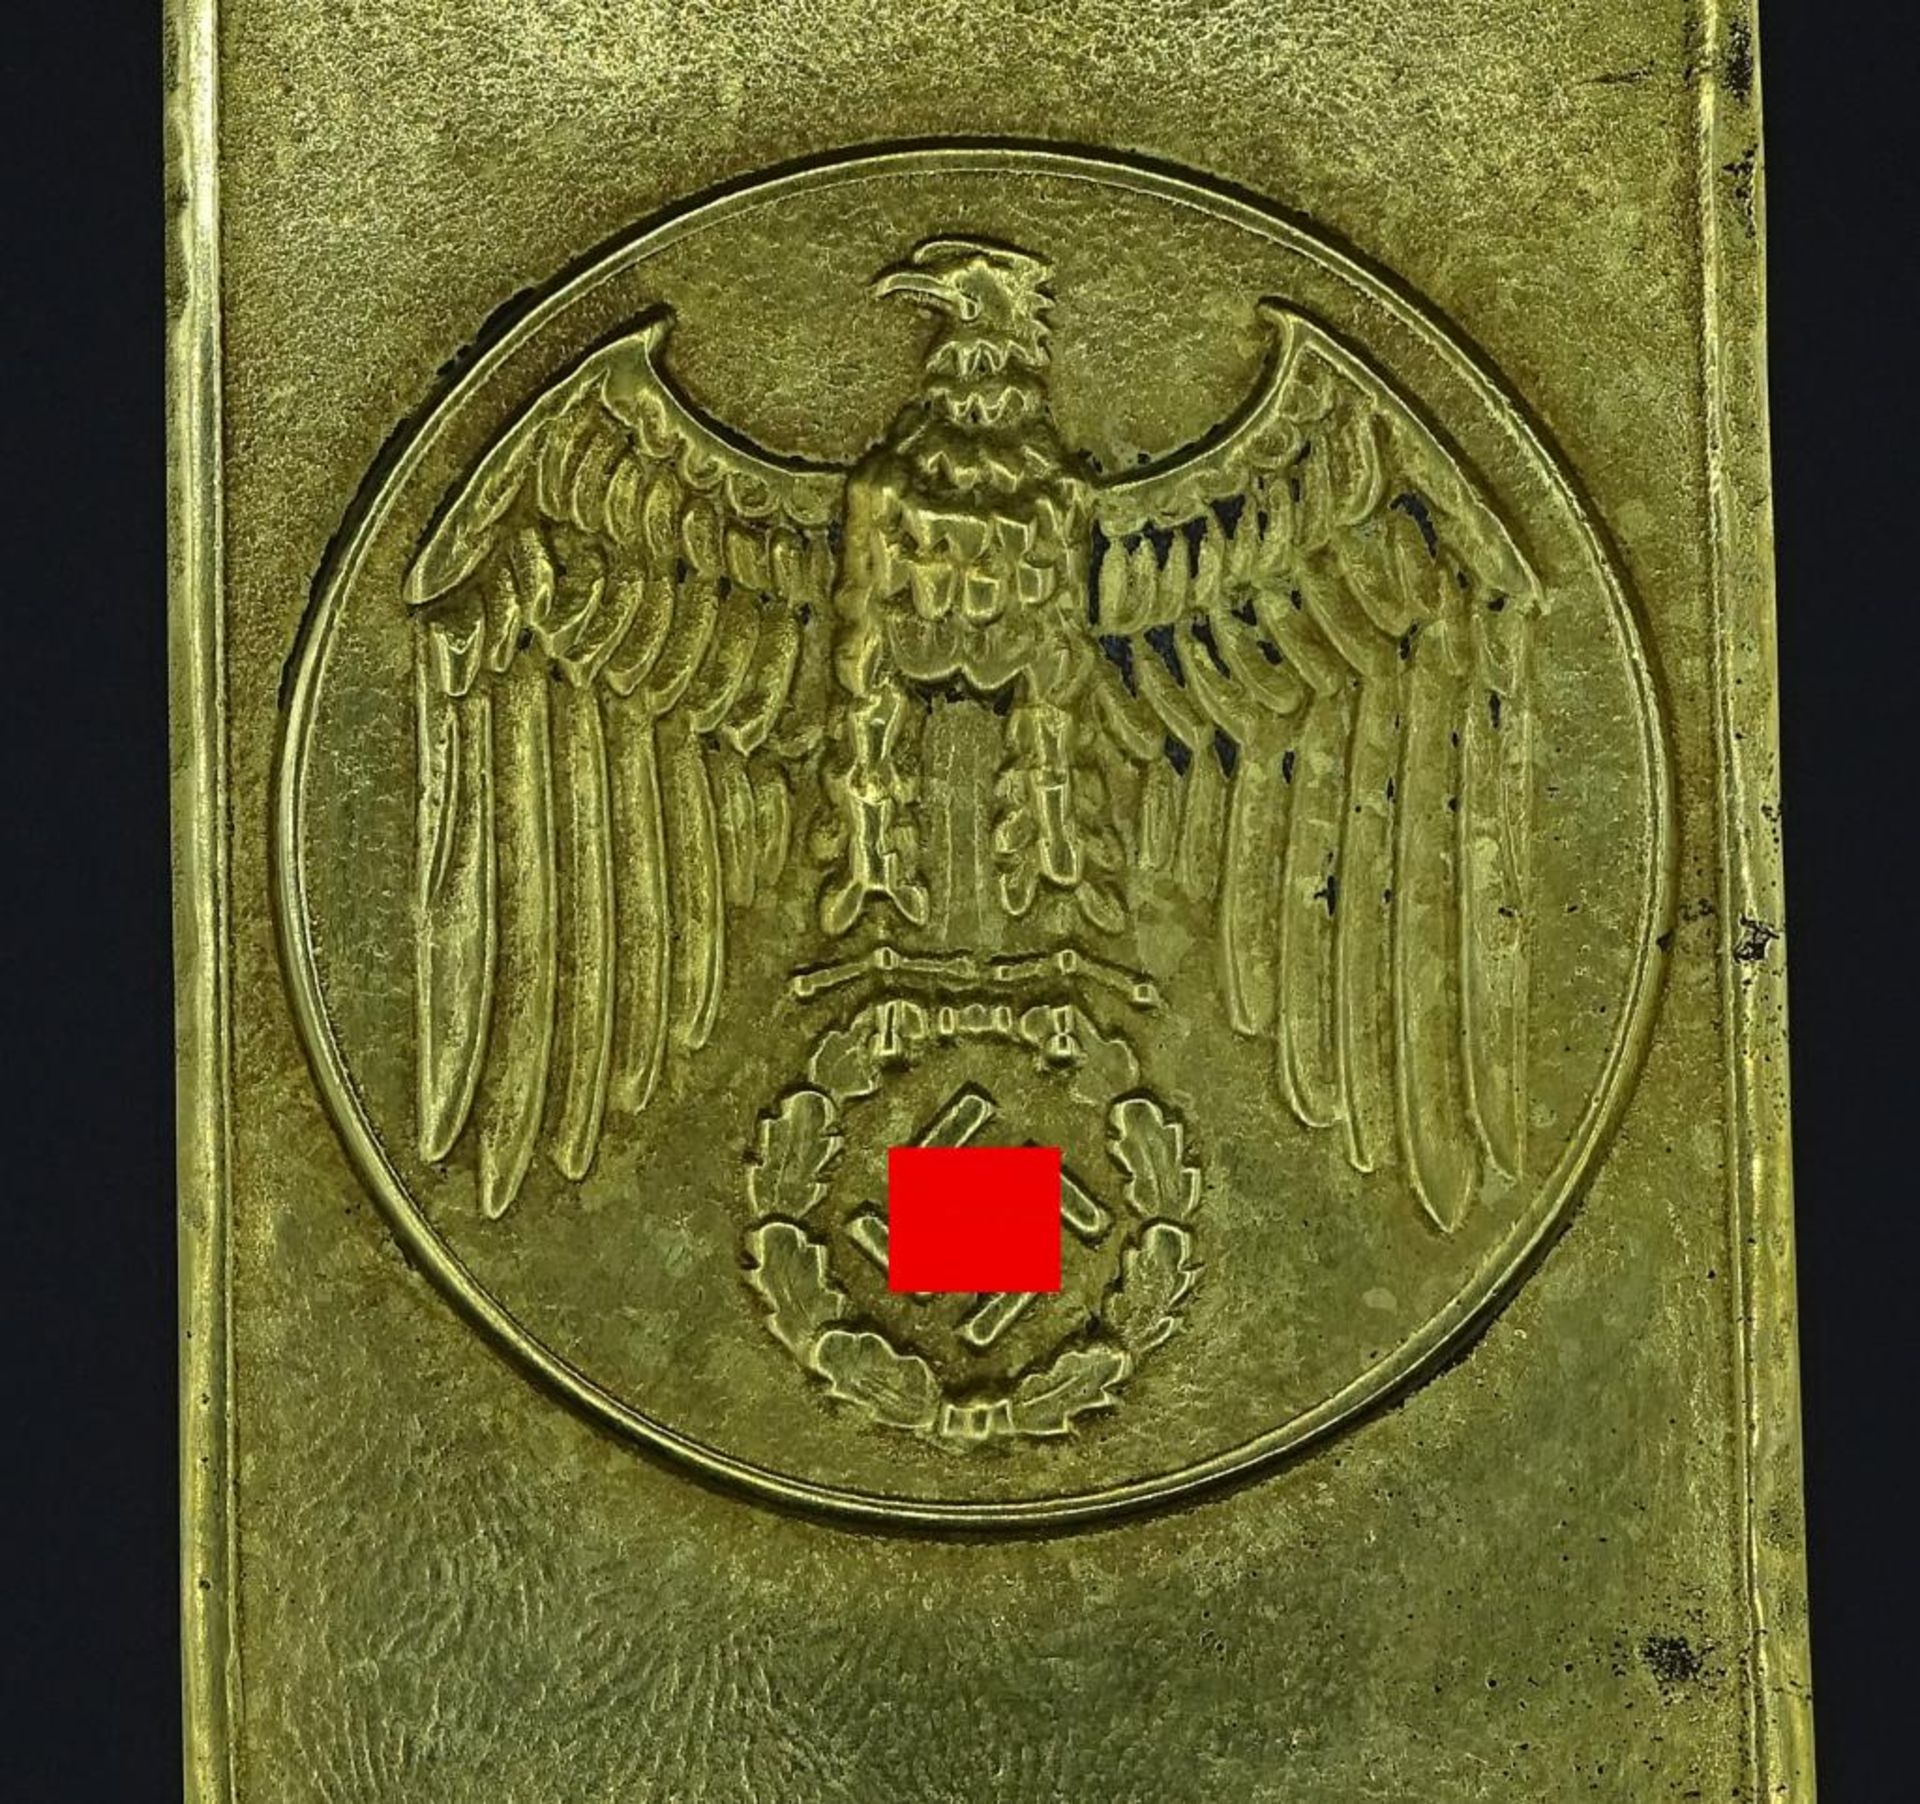 Messing Plakette mit Hoheitszeichen,25x9,3cm, - Bild 2 aus 3